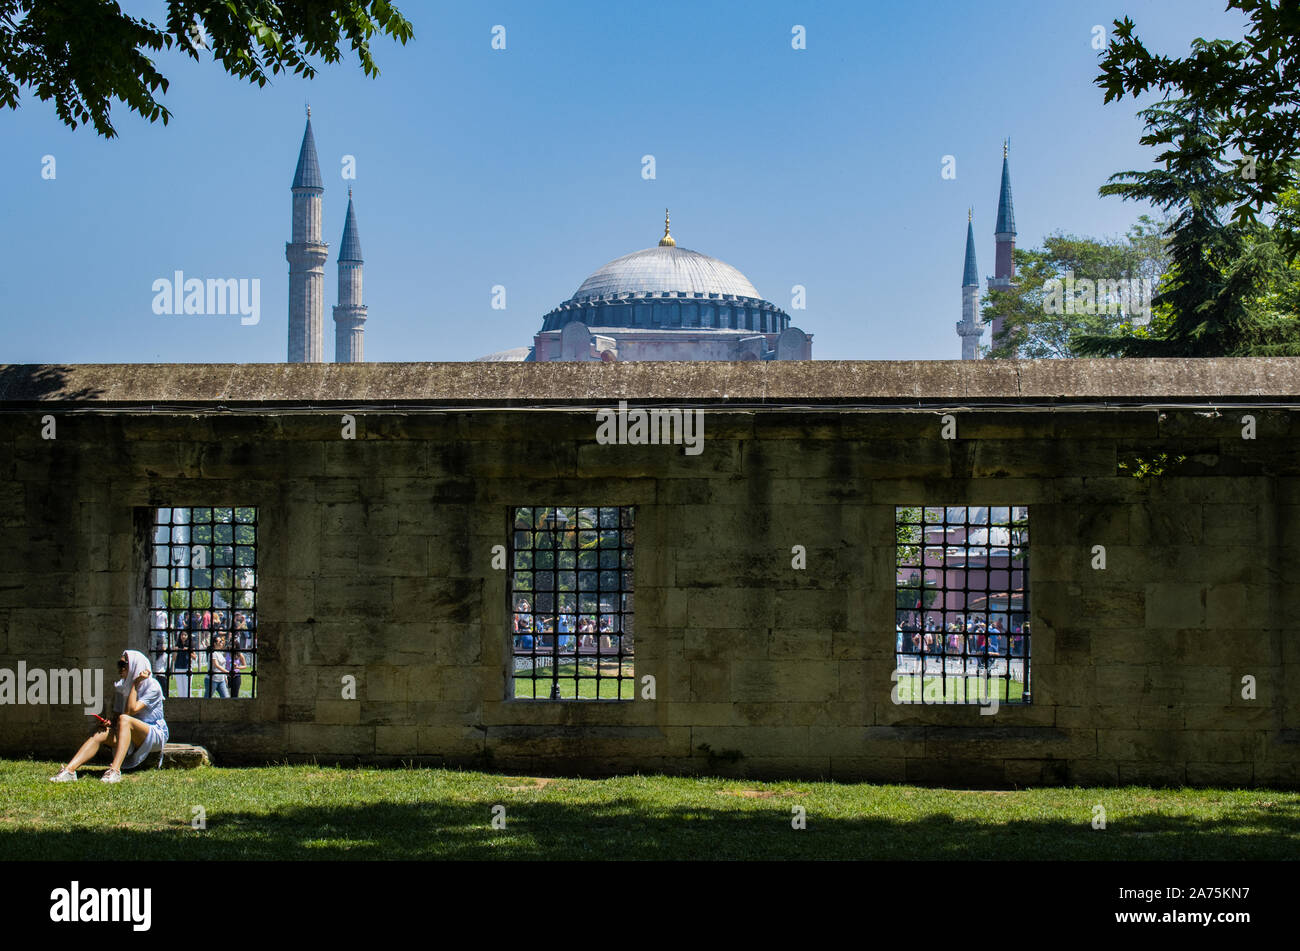 Istanbul : Hagia Sophia, ex-Chrétienne Grecque Orthodoxe cathédrale patriarcale, plus tard mosquée impériale ottomane, par la cour de la Mosquée Bleue Banque D'Images